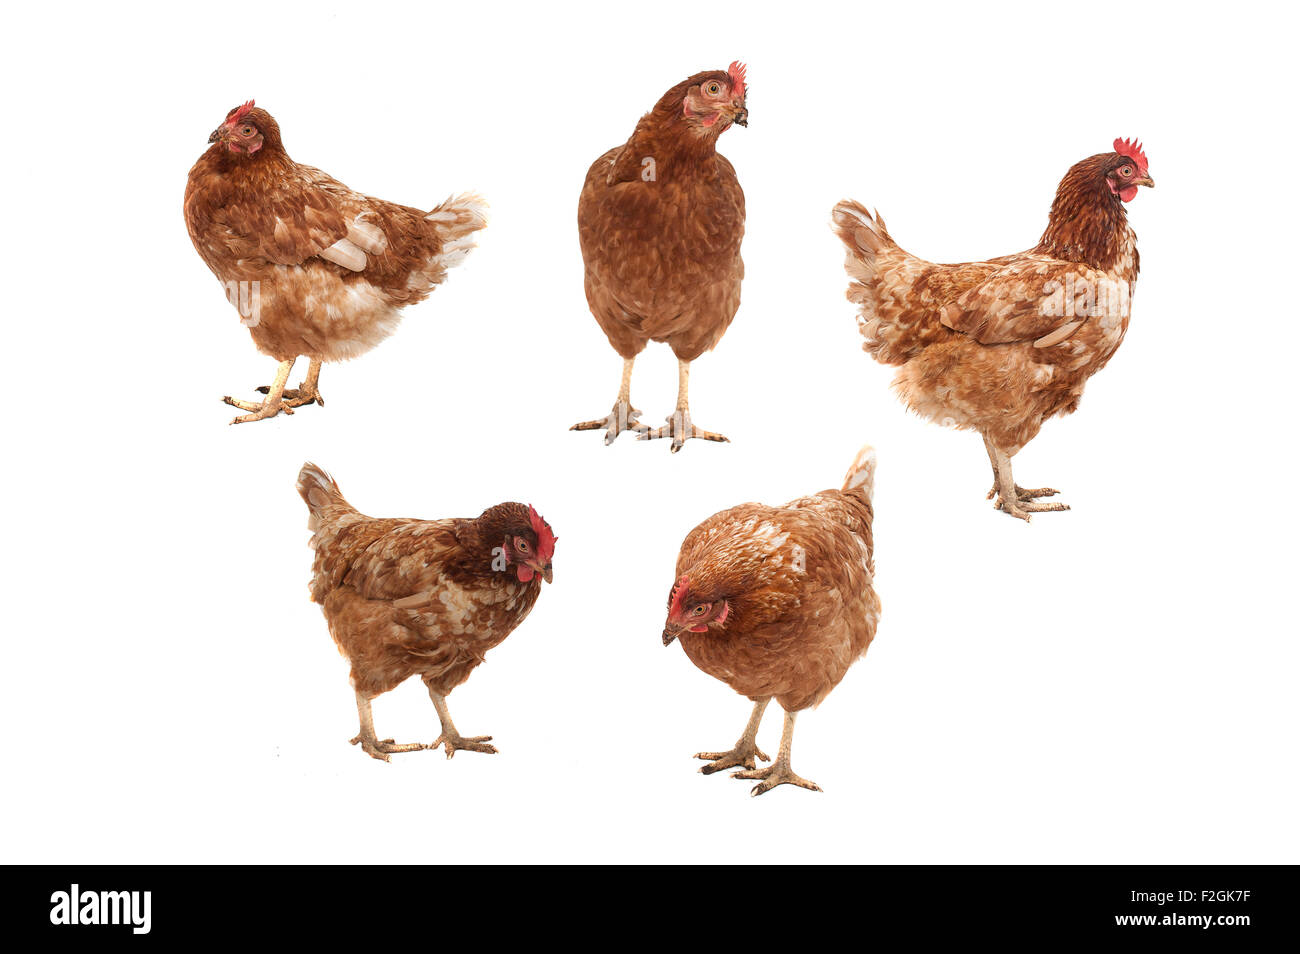 Fünf Hühner in verschiedenen Posen auf einem weißen Hintergrund. Stockfoto